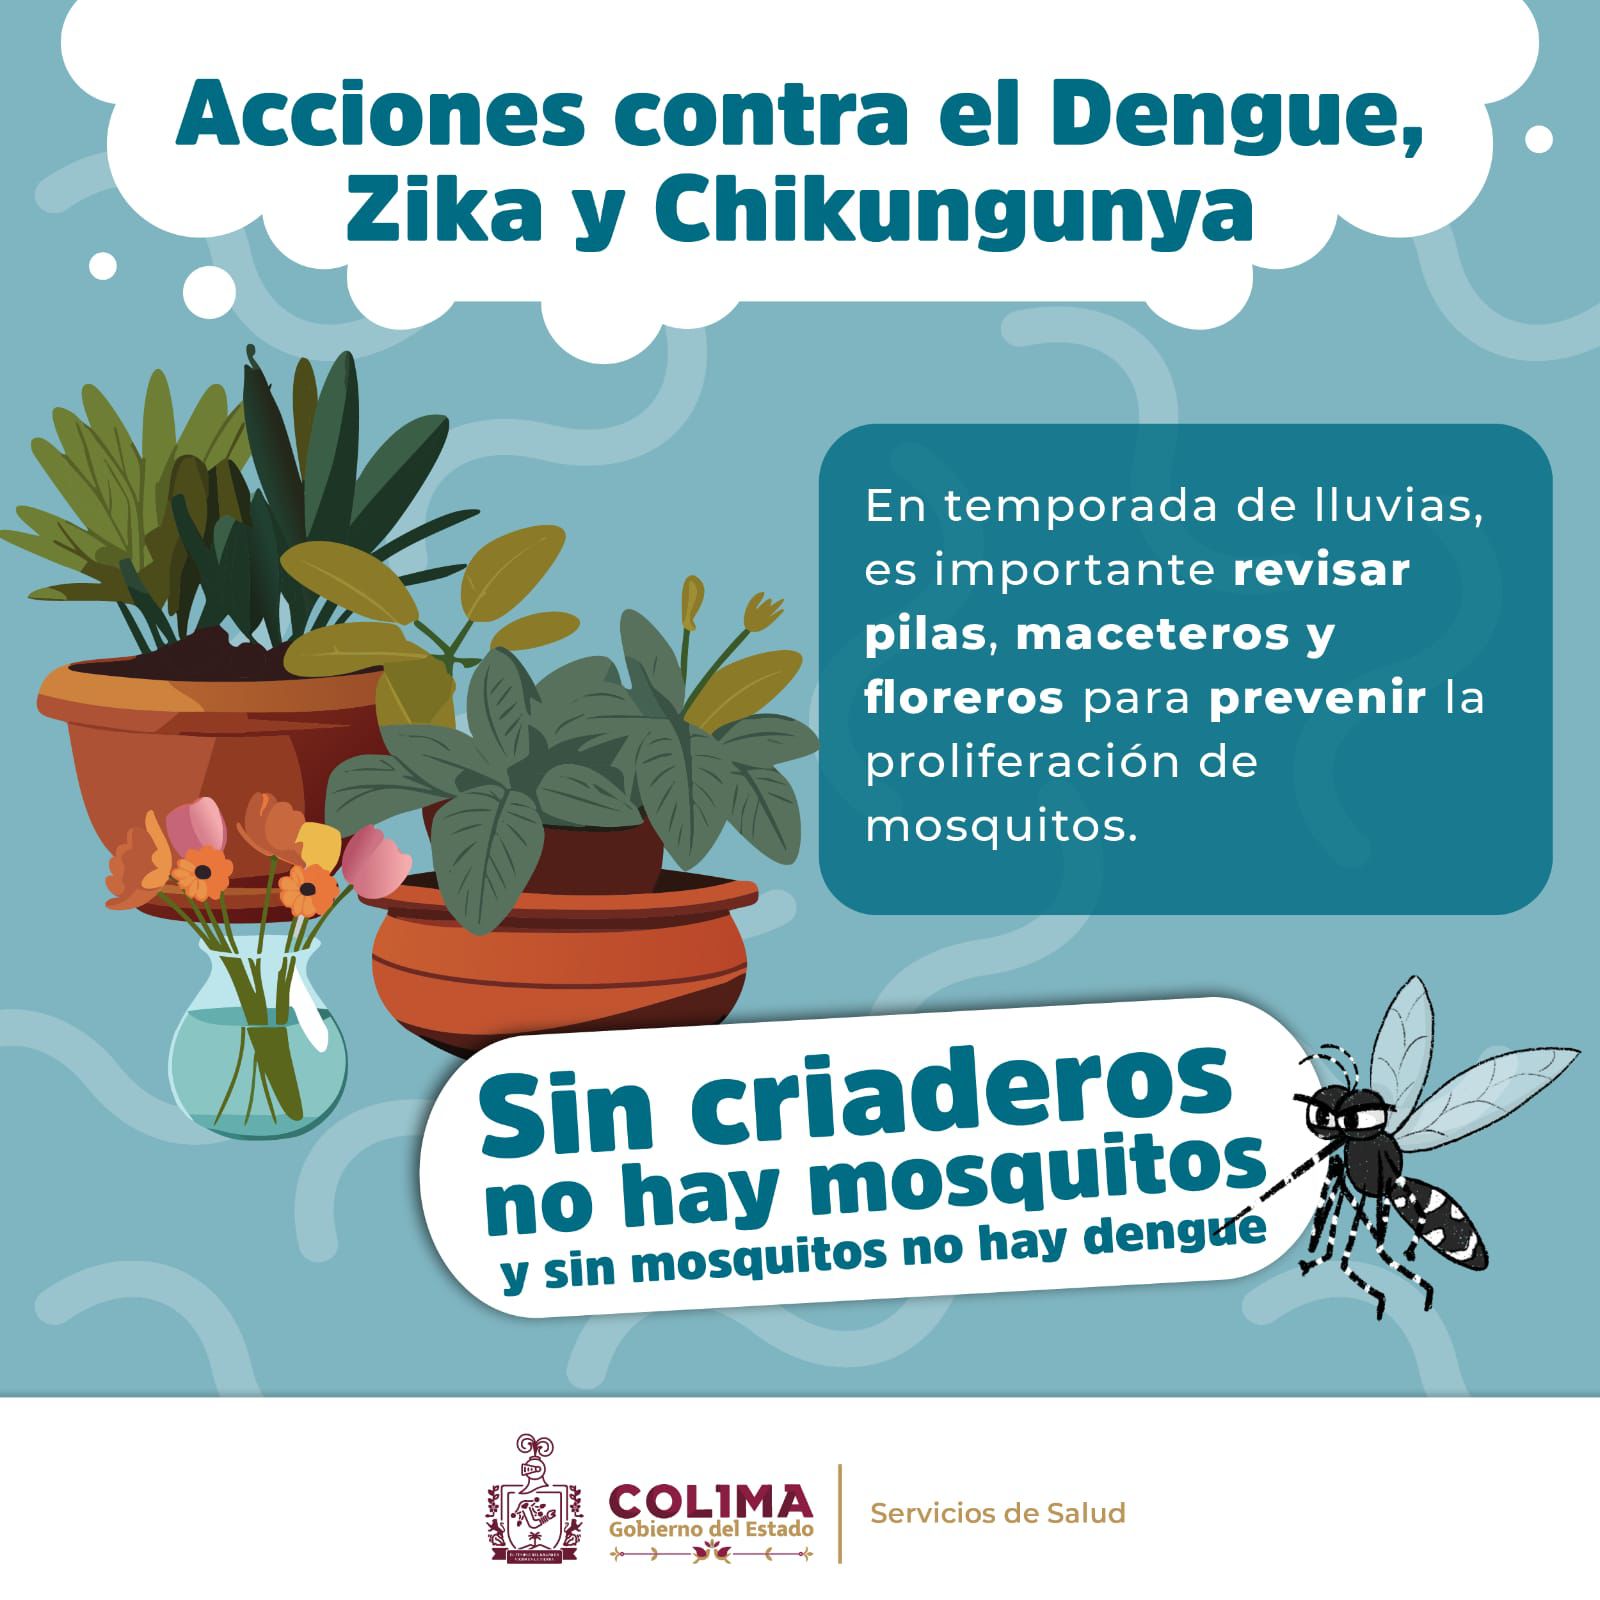 Acciones contra el dengue, zika y chikungunya